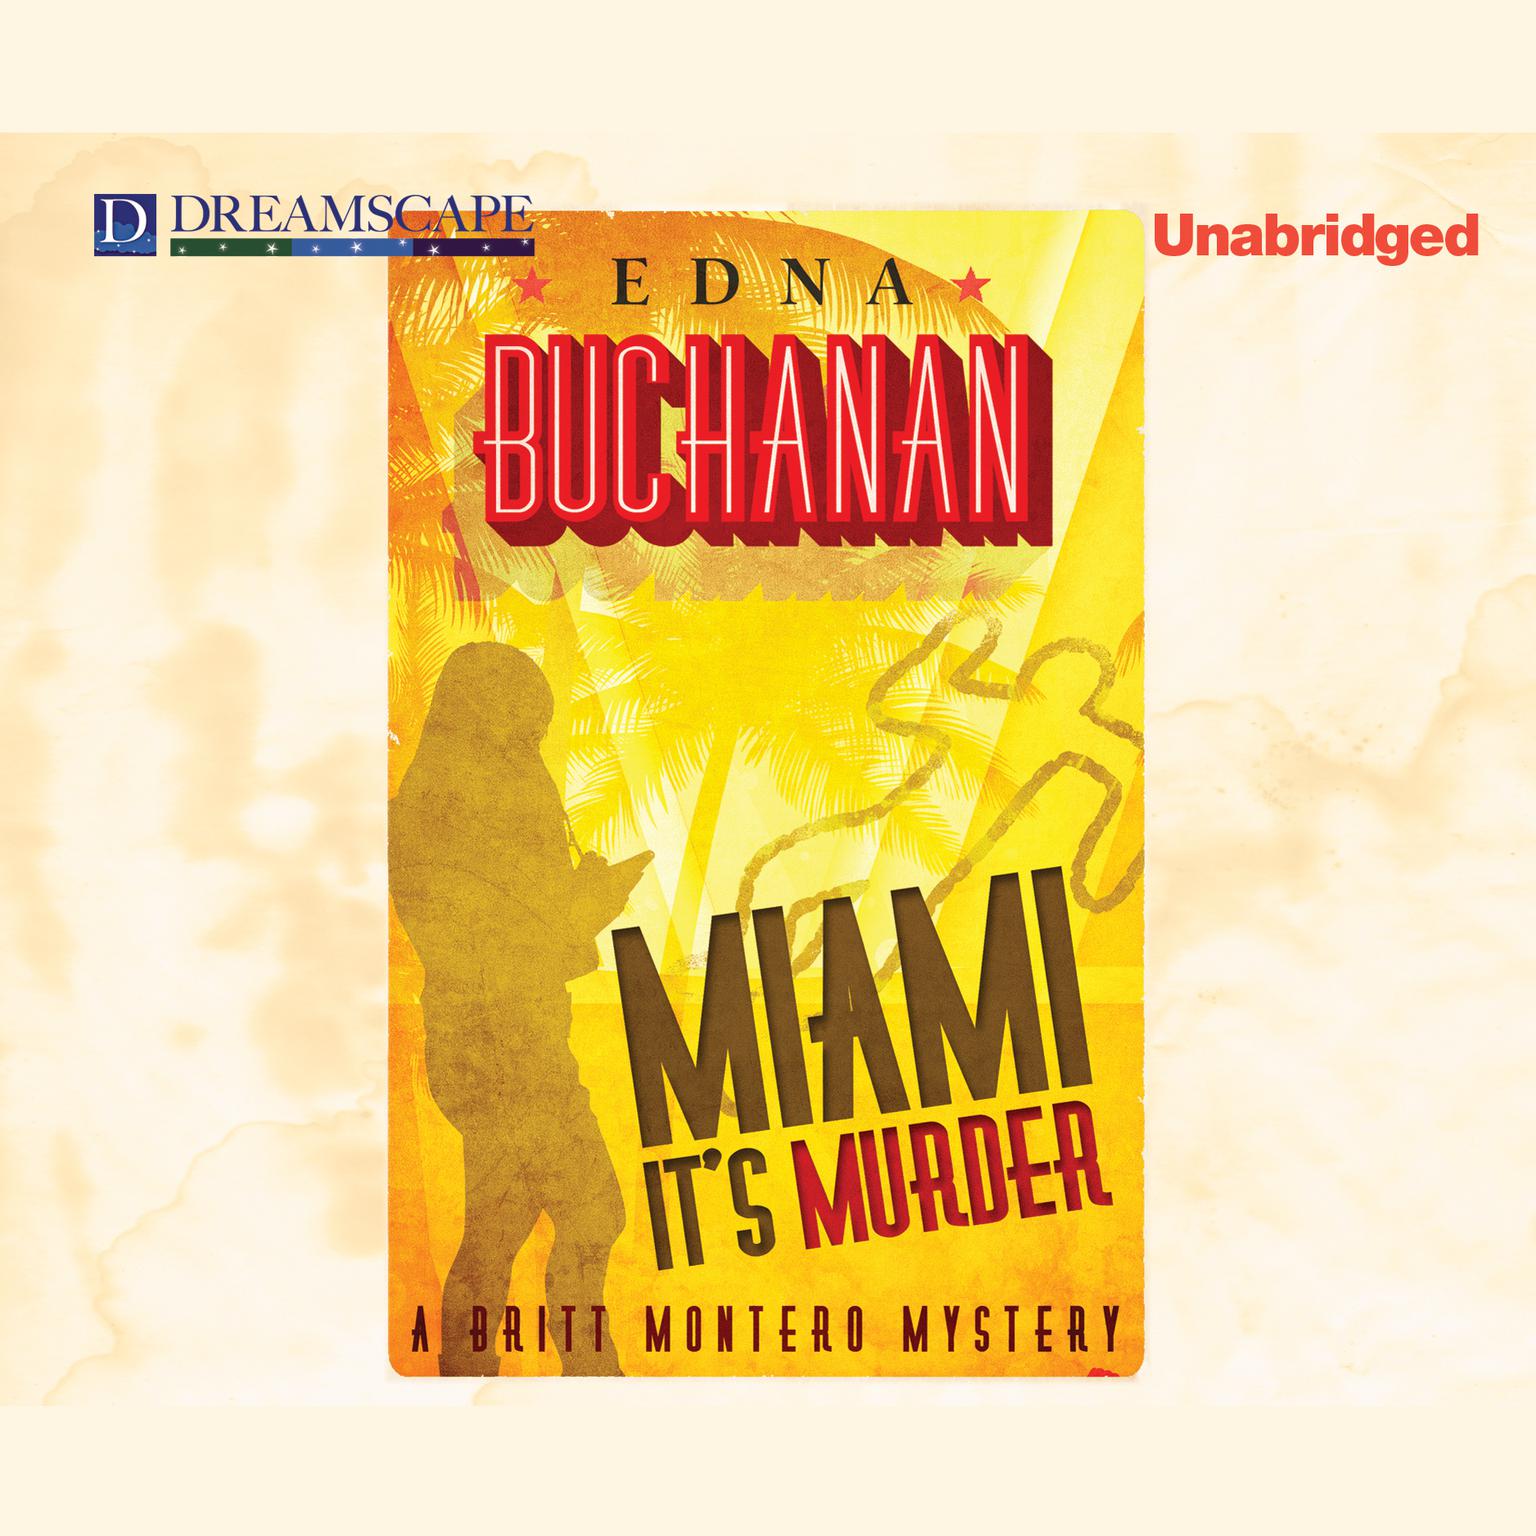 Miami, It’s Murder: A Britt Montero Mystery Audiobook, by Edna Buchanan